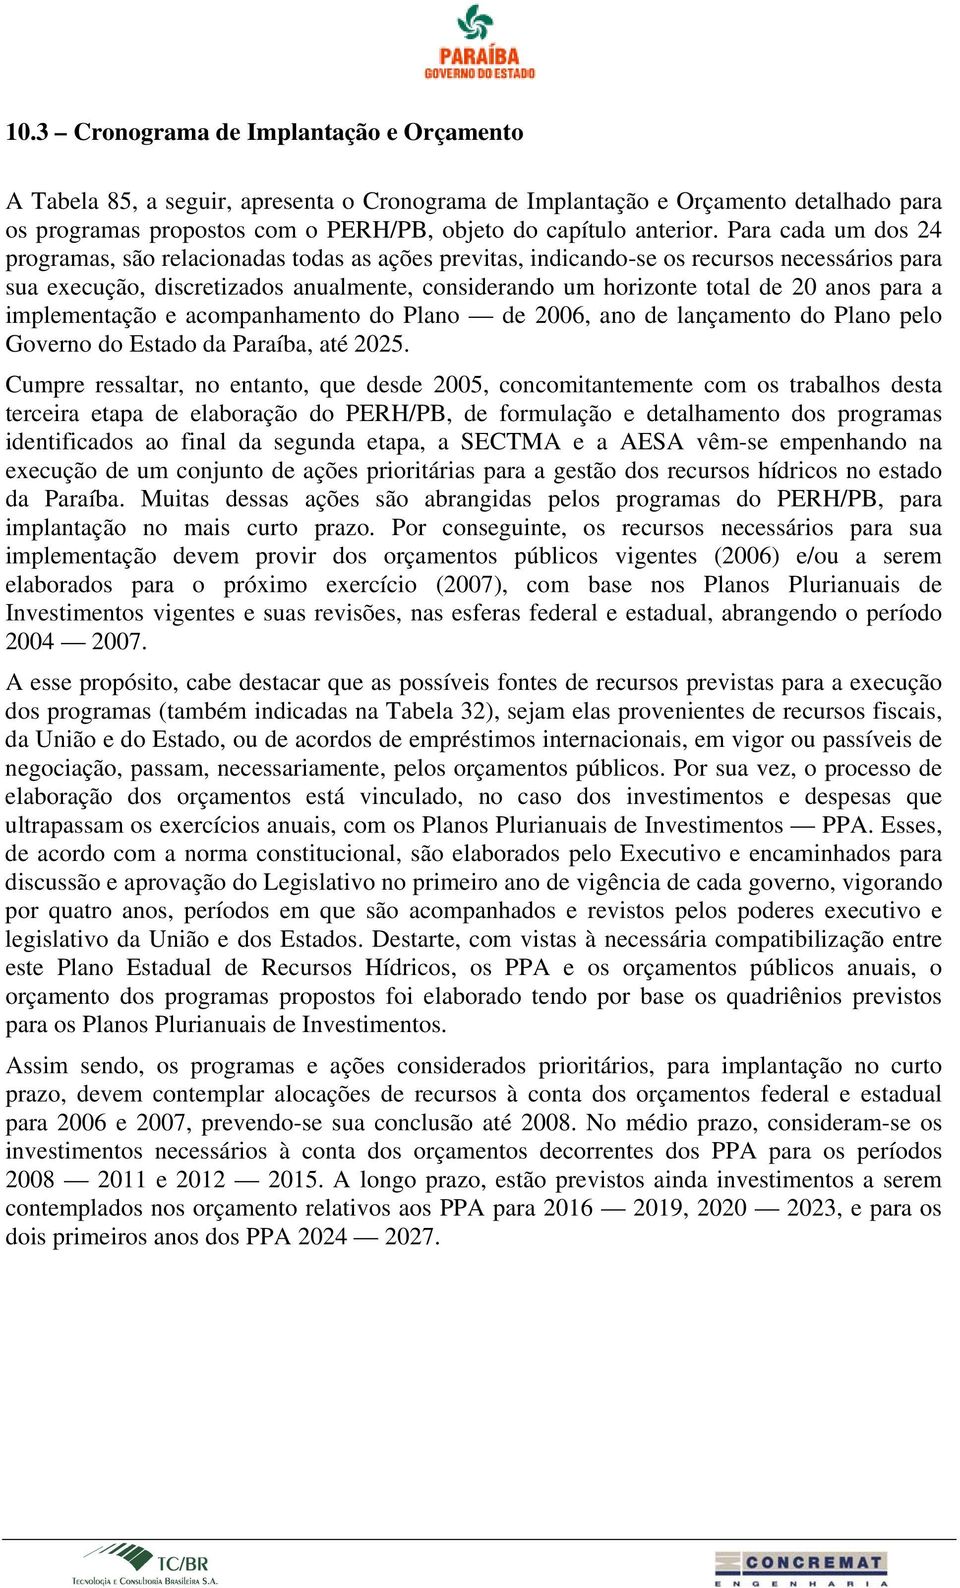 para a implementação e acompanhamento do Plano de 2006, ano de lançamento do Plano pelo Governo do Estado da Paraíba, até 2025.